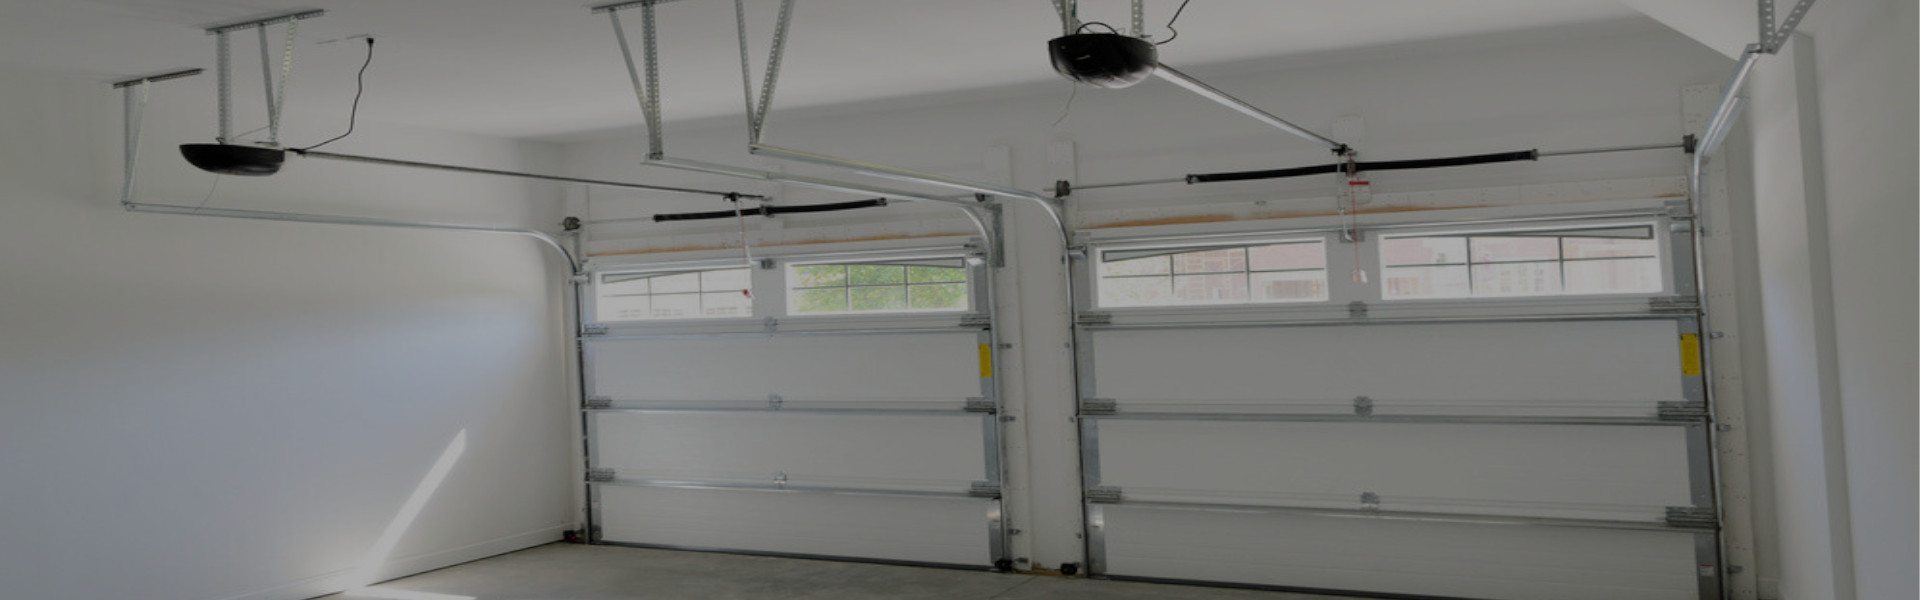 Slider Garage Door Repair, Glaziers in Plumstead, SE18